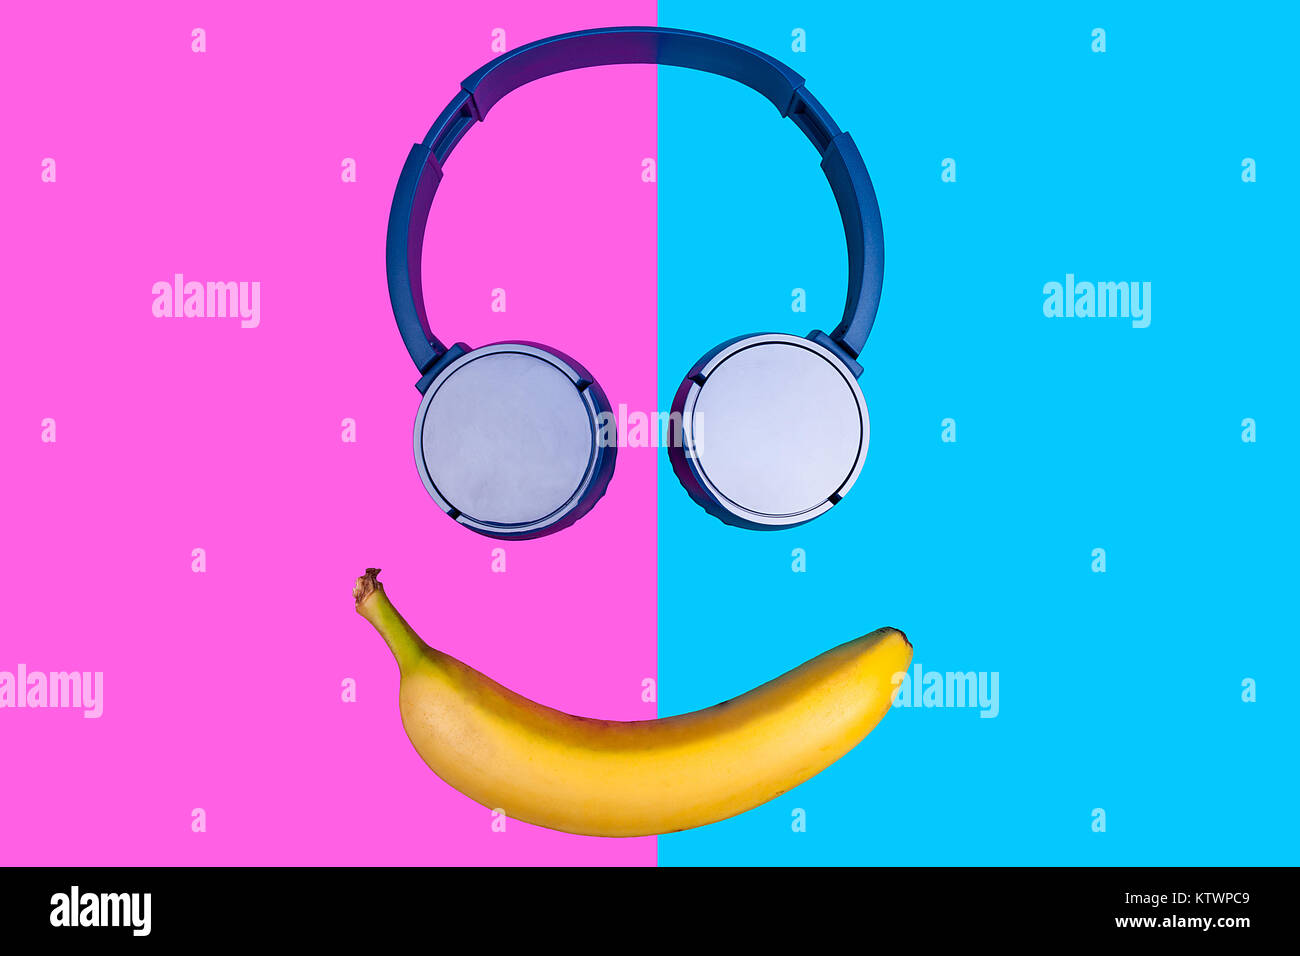 Pop Art flachbild Konzept der Banane und Kopfhörer auf lebhaften farbigen b Stockfoto